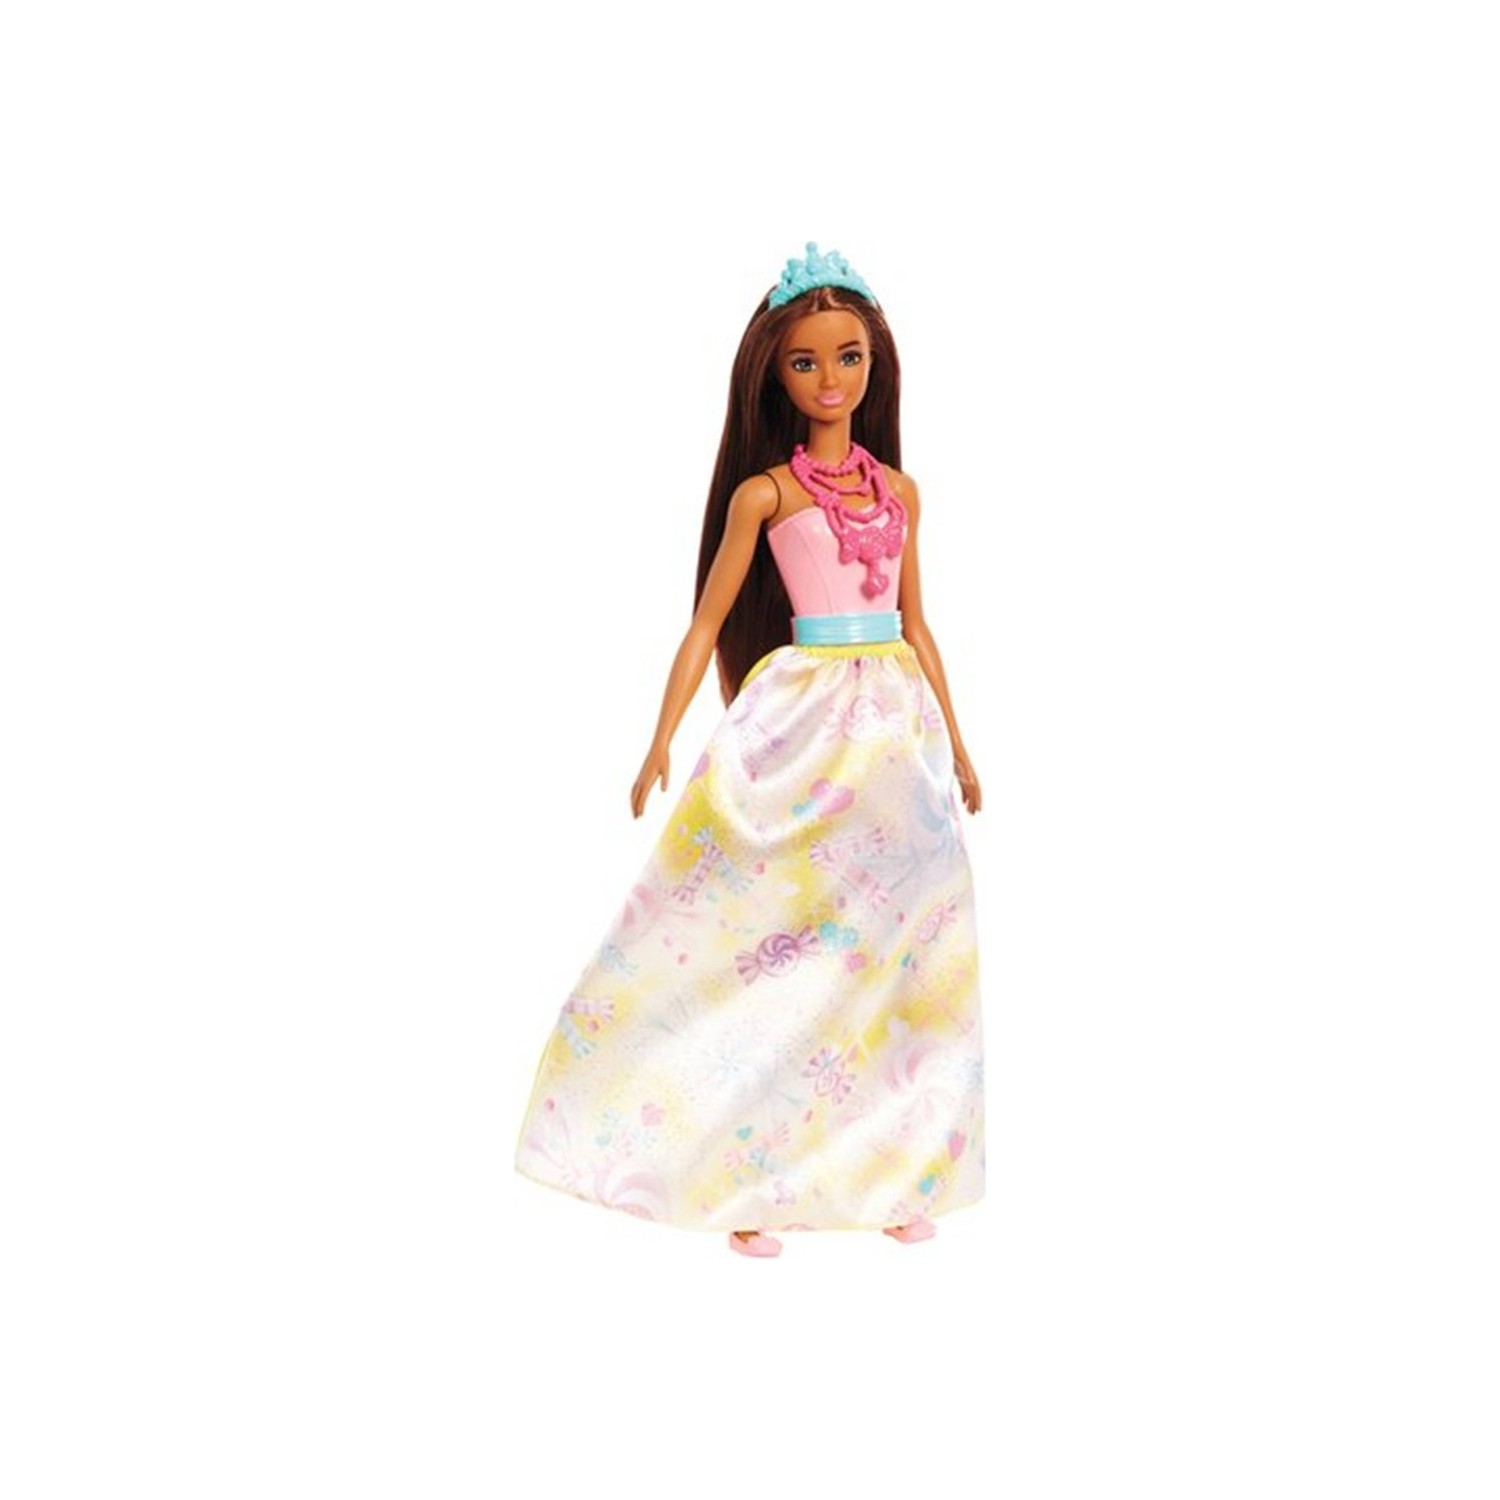 Кукла Barbie Dreamtopia Rainbow Latiin Princess кукла barbie dreamtopia princess dolls fjc94